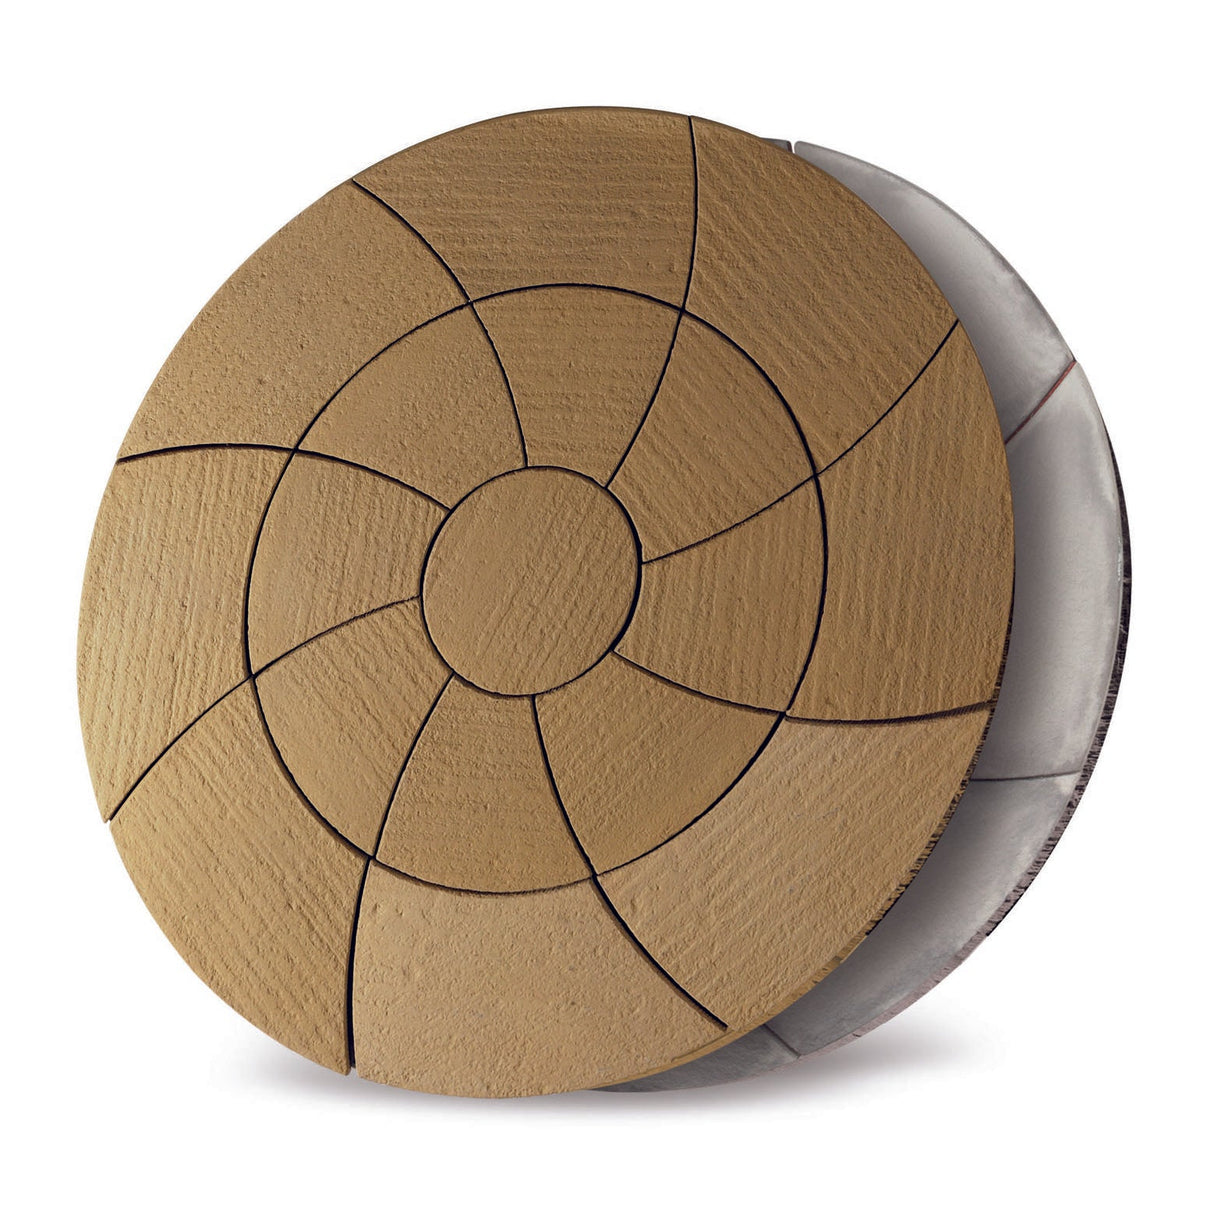 Bowland Stone Cloister Catherine Wheel Patio Circle Kit - Weathered Slate - 2.09m